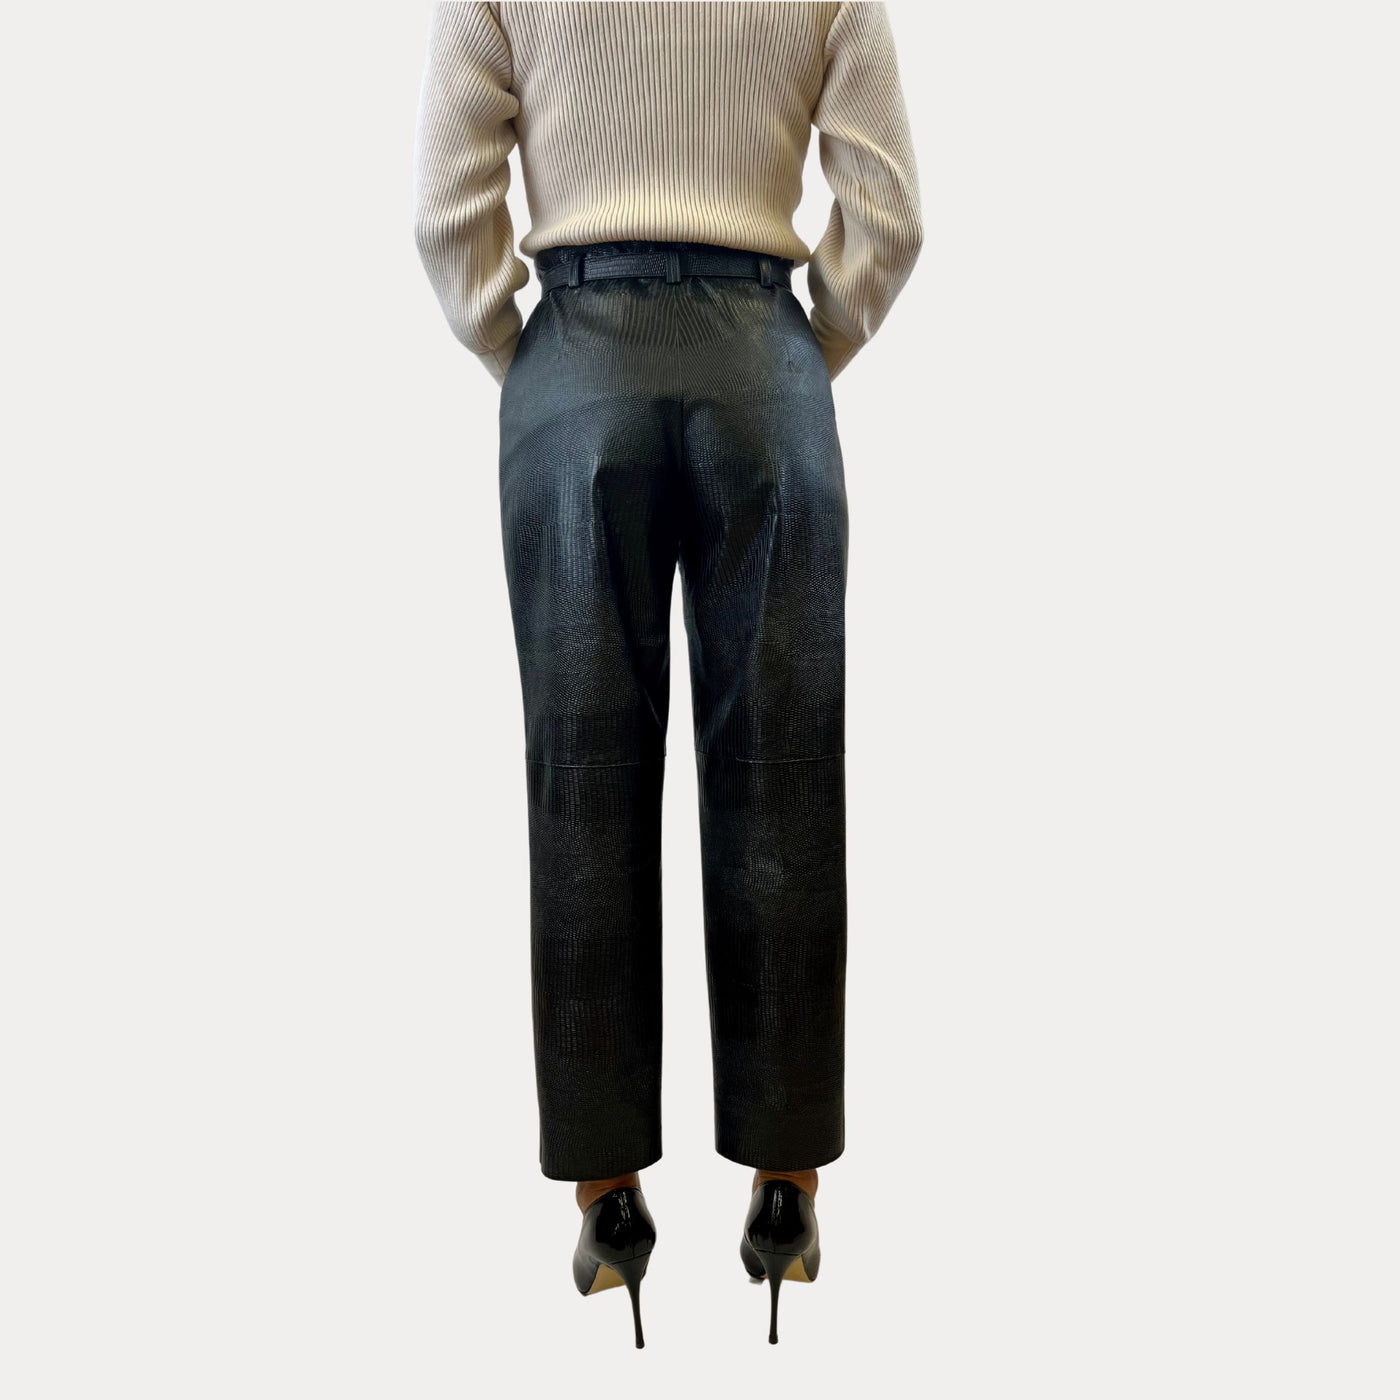 Pantalone Donna modello classico con cinta